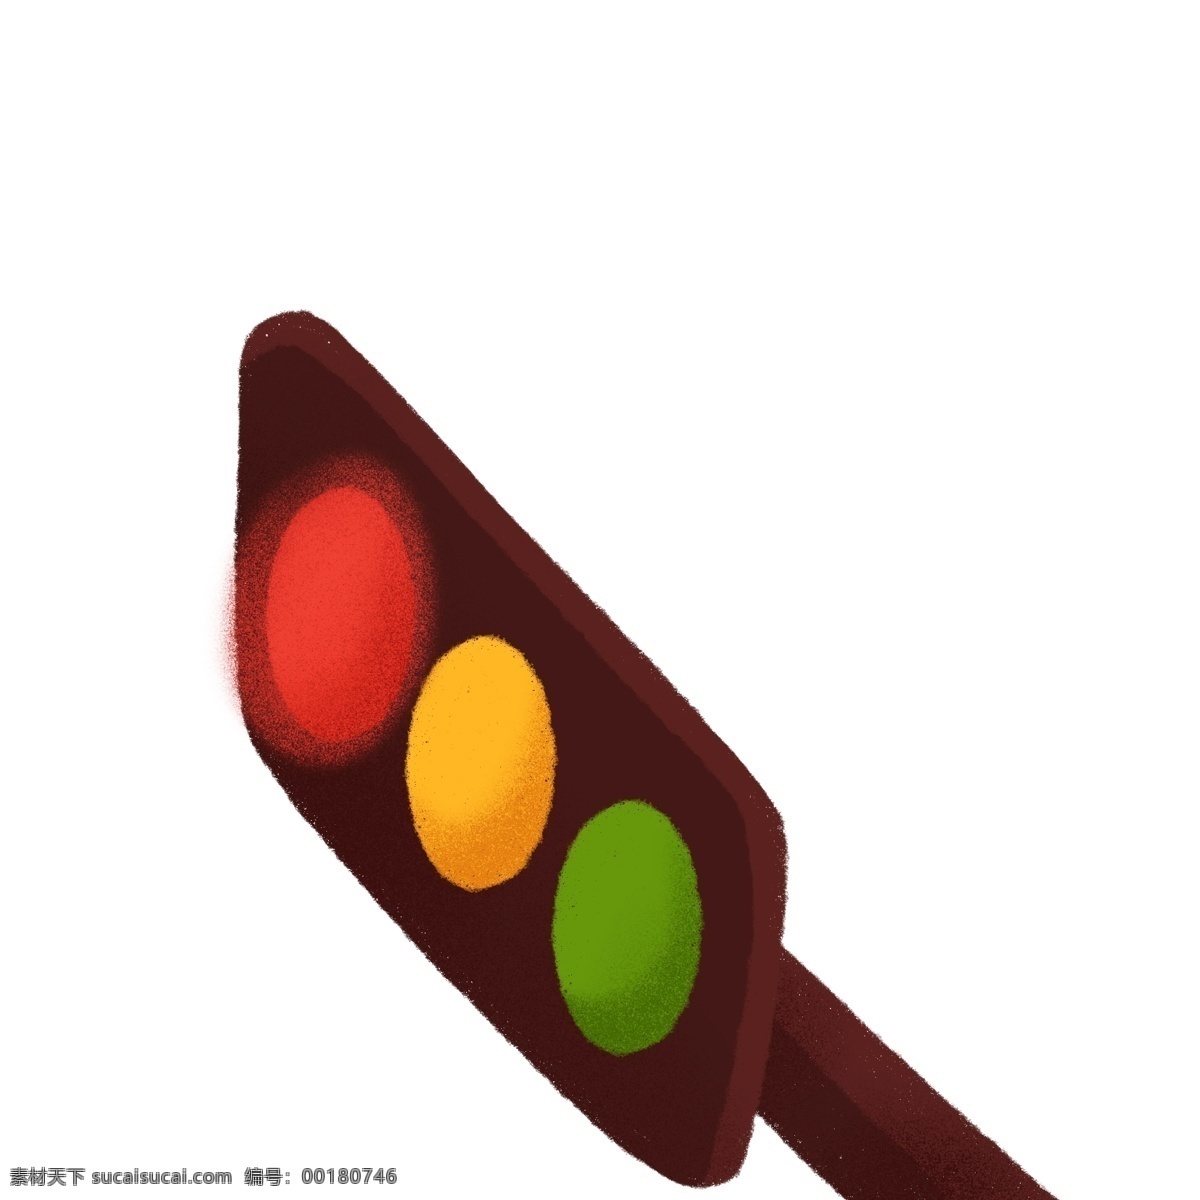 卡通 手绘 红绿灯 交通灯 元素 创意 指示灯 插画元素